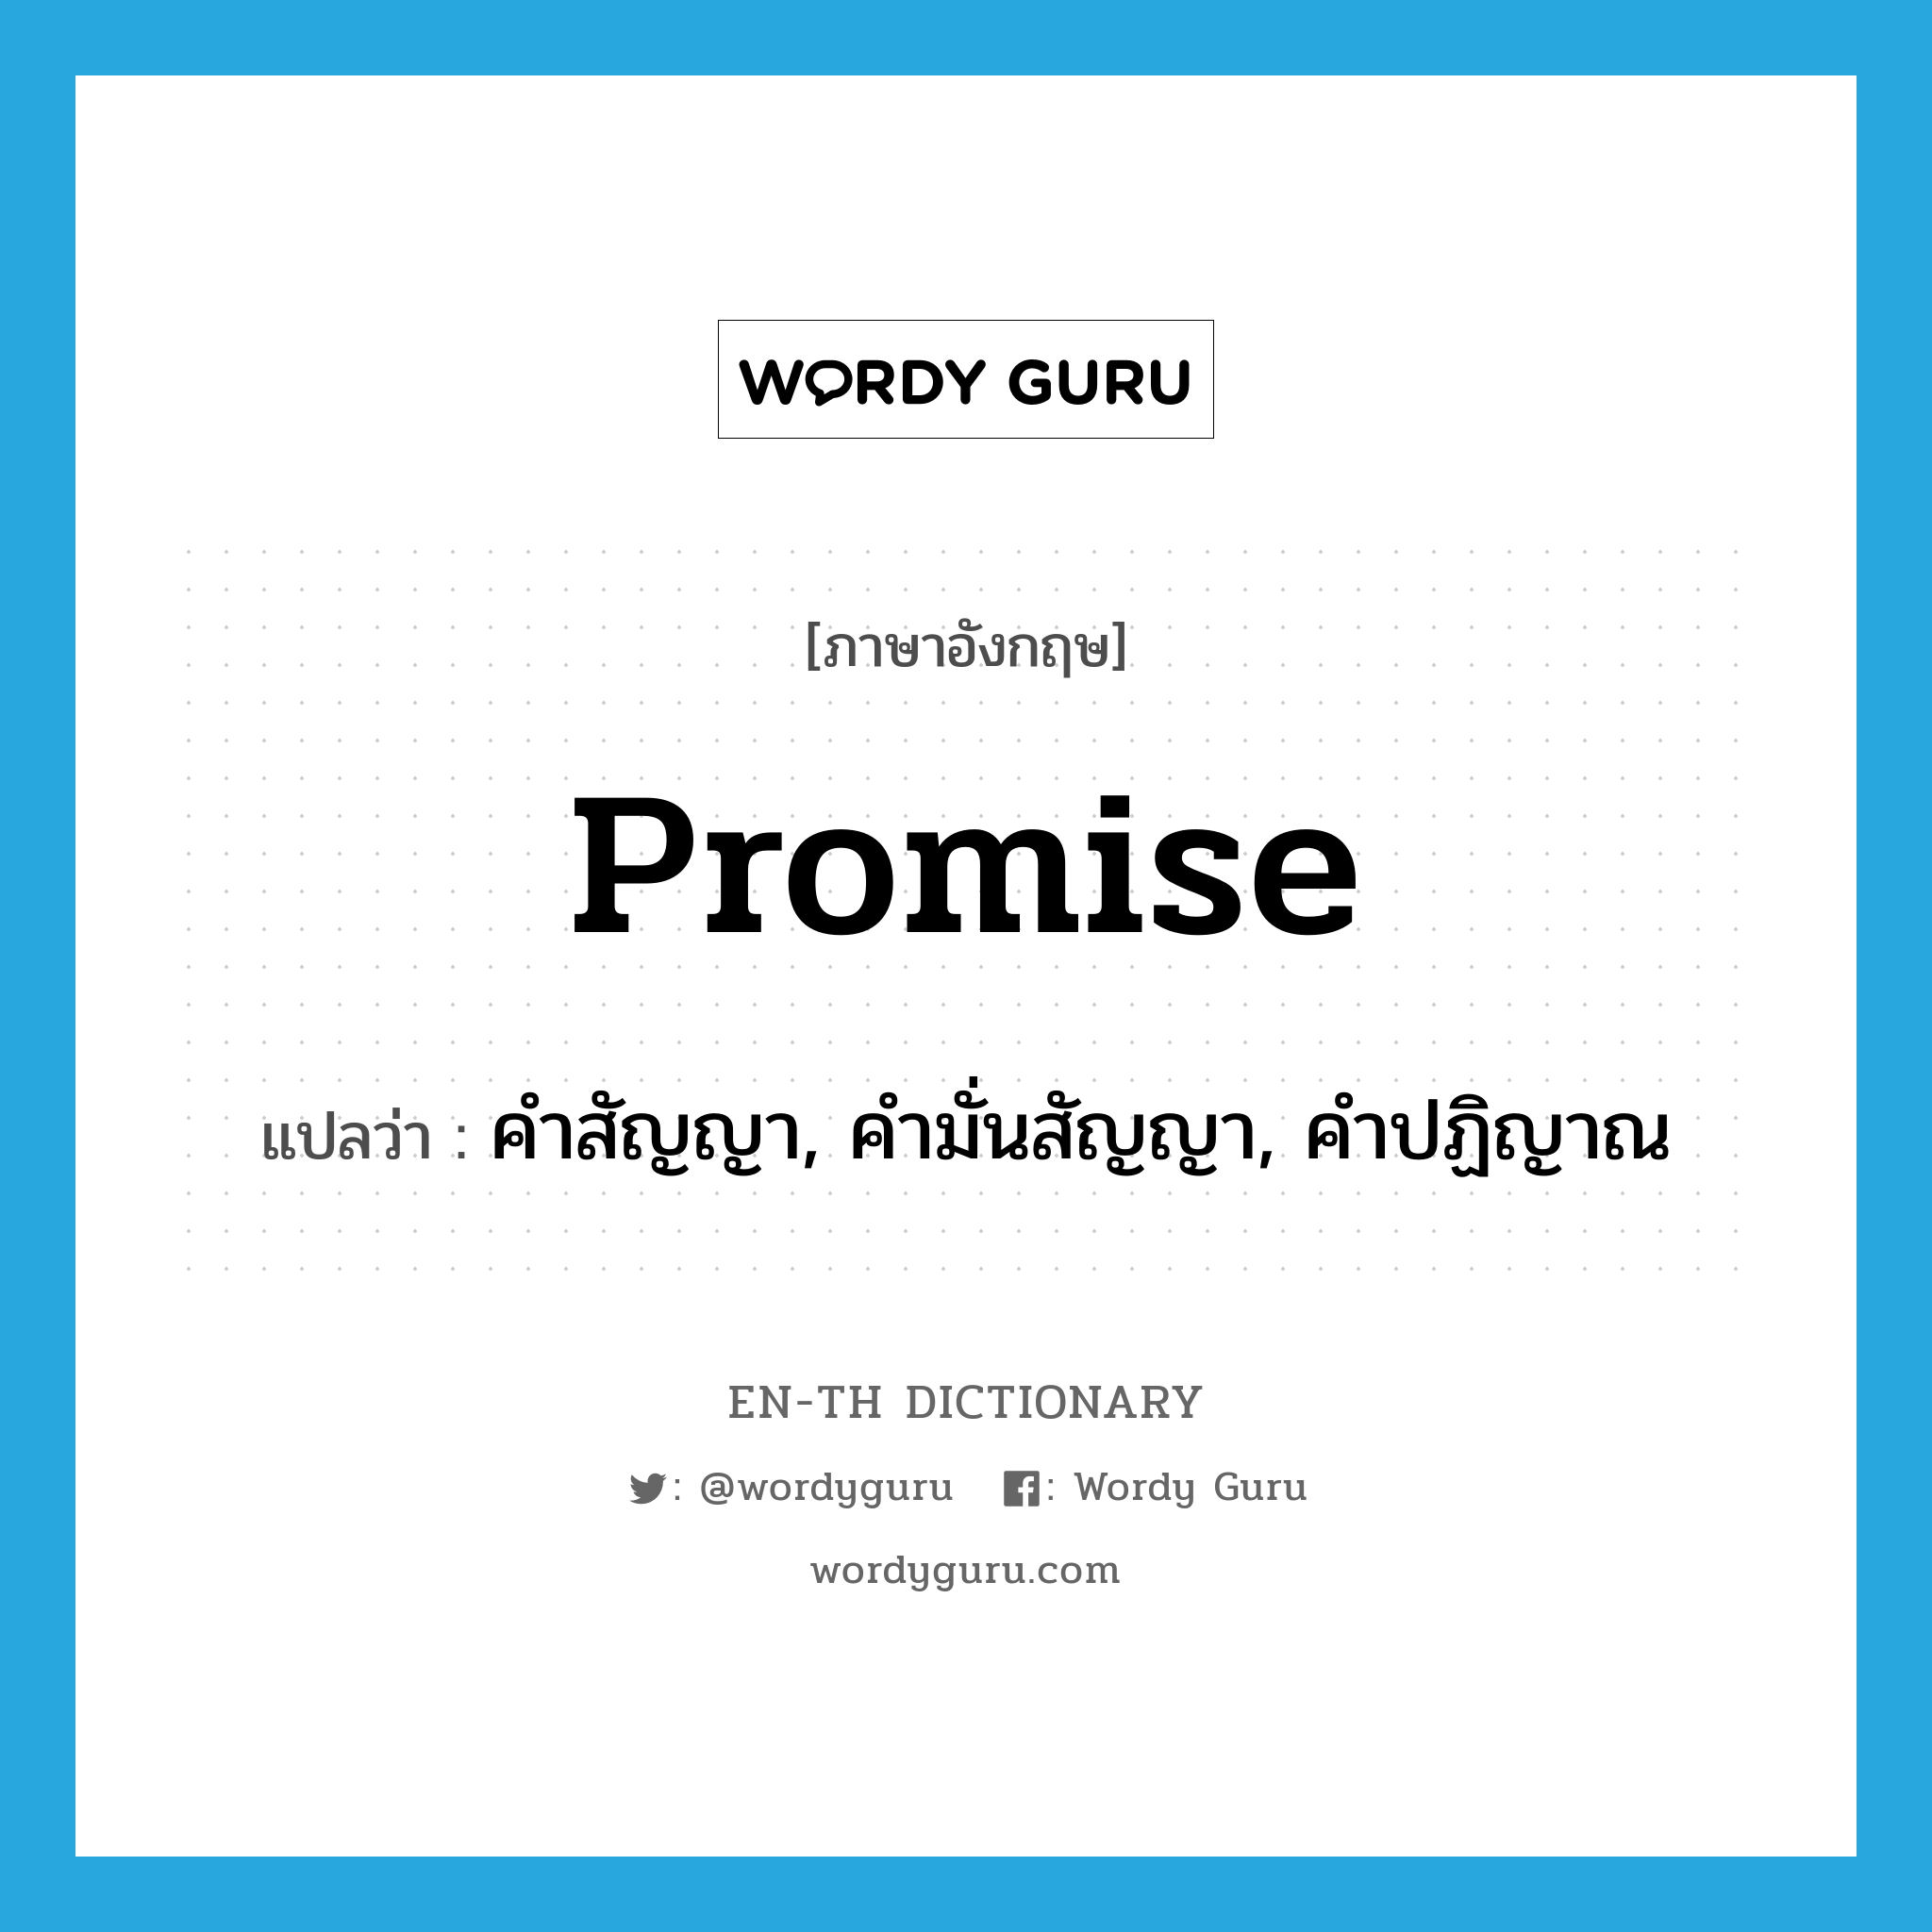 คำสัญญา, คำมั่นสัญญา, คำปฏิญาณ ภาษาอังกฤษ?, คำศัพท์ภาษาอังกฤษ คำสัญญา, คำมั่นสัญญา, คำปฏิญาณ แปลว่า promise ประเภท N หมวด N